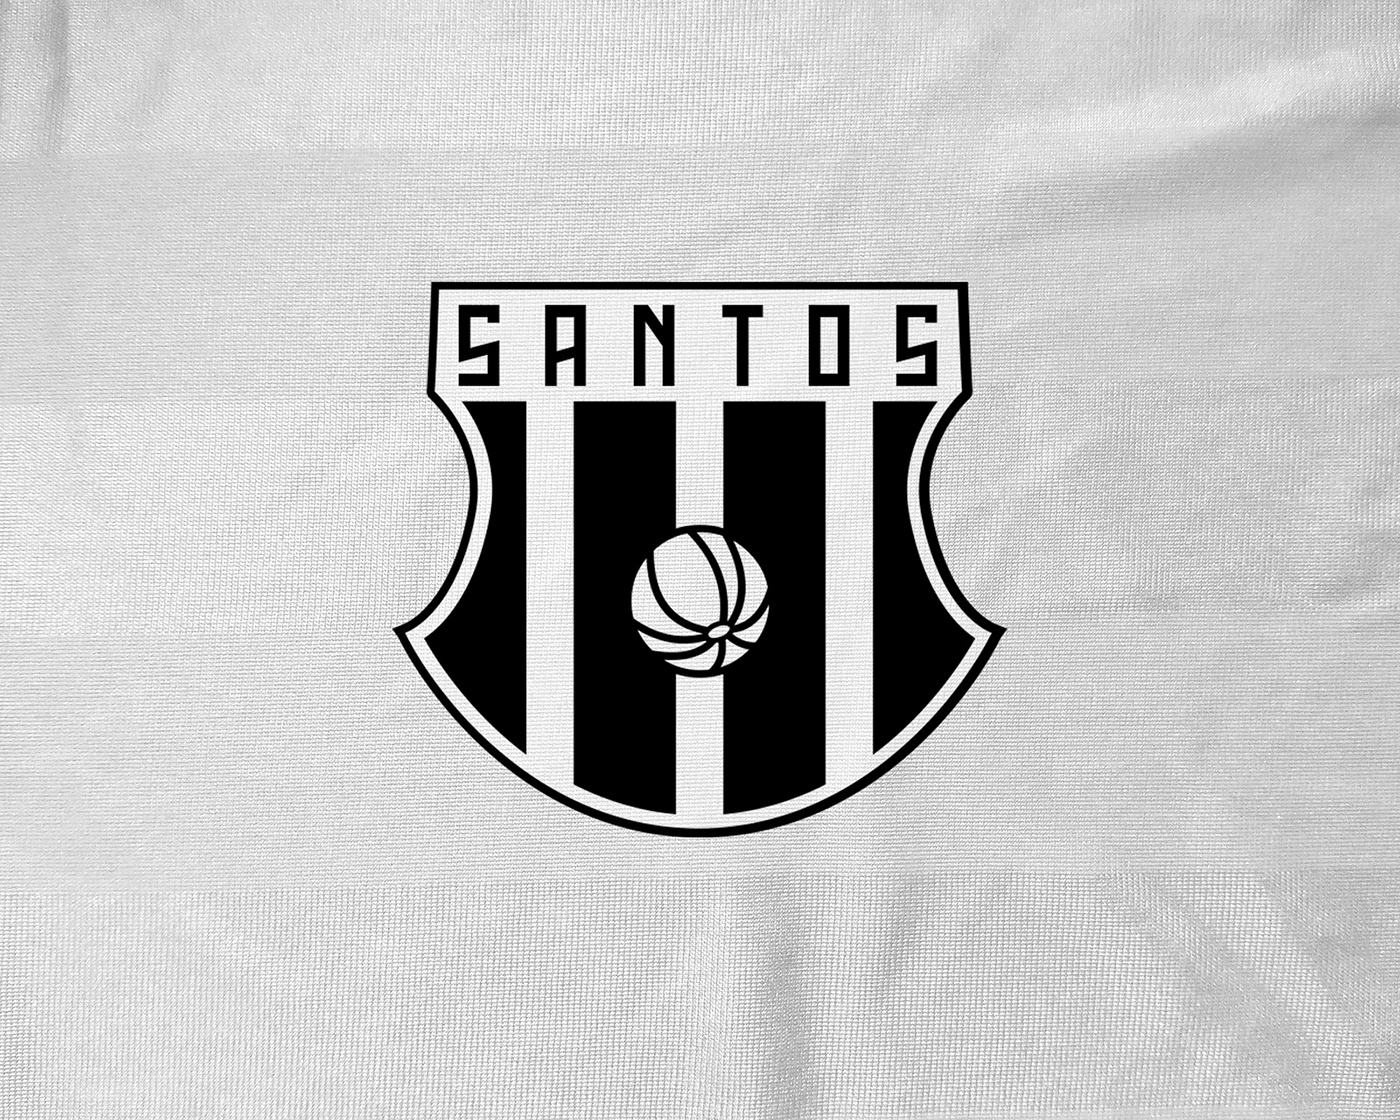 Brasil clubcrestchallenge crest Escudos futebol logos redesign soccer teams times